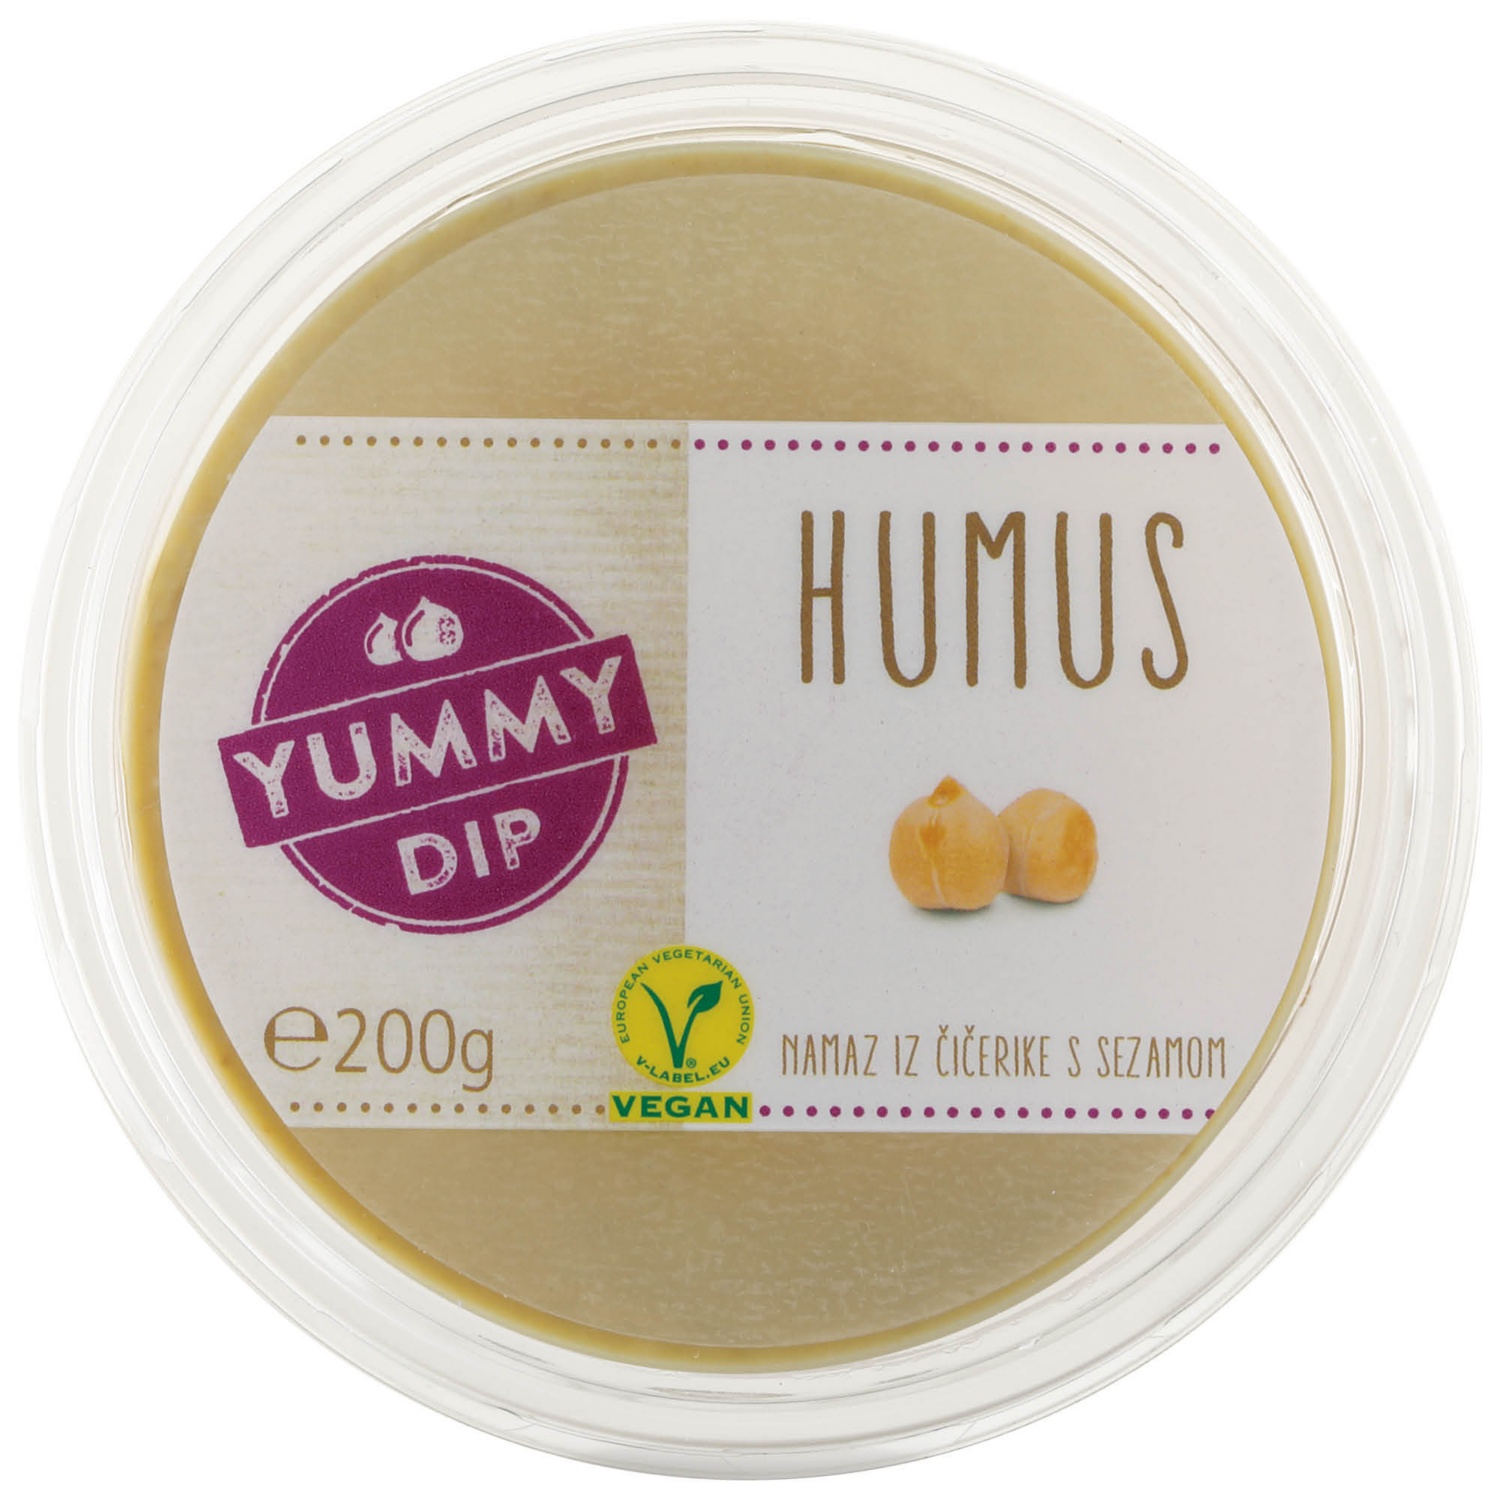 YUMMY DIP Hummus, klassisch